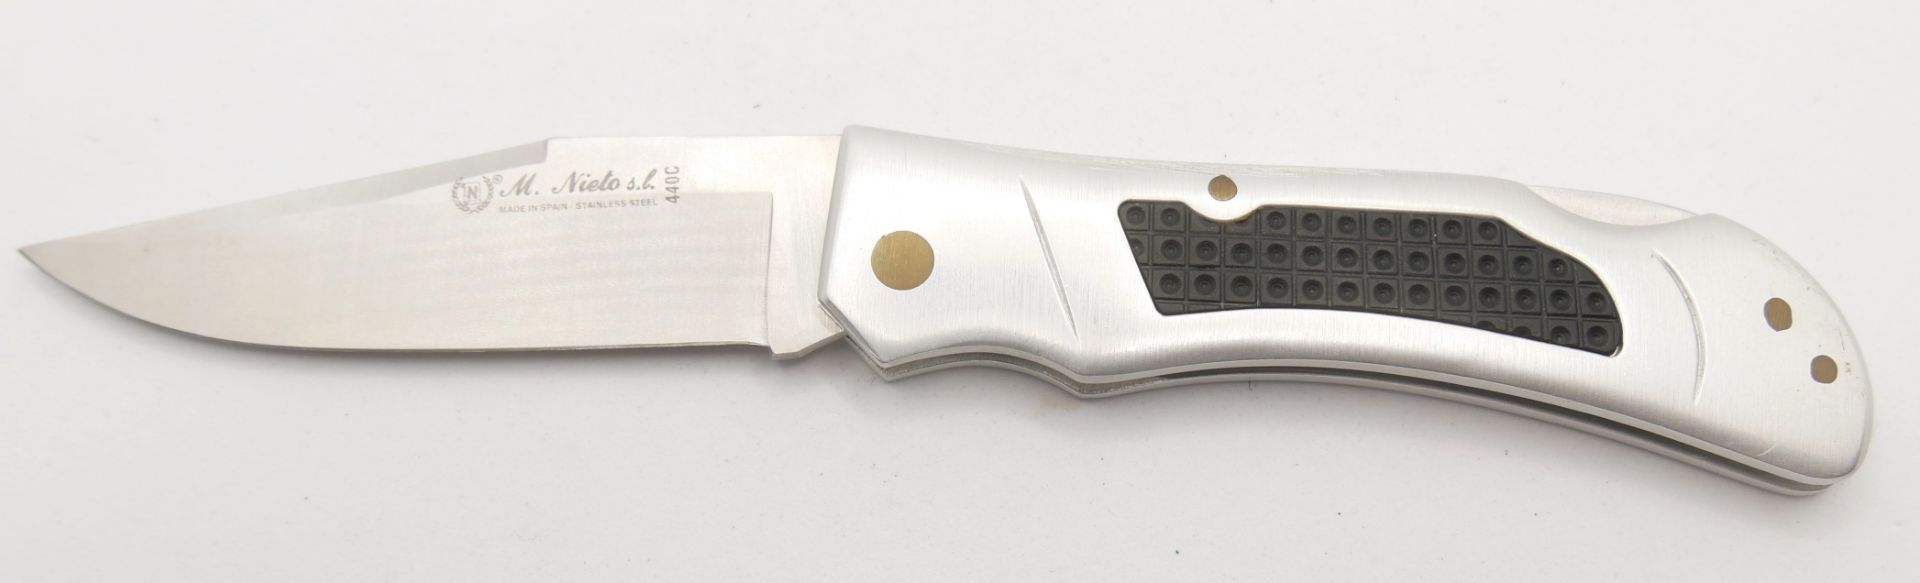 Outdoor Taschenmesser M.Nieto 440 C. Top Messer, sehr guter Zustand